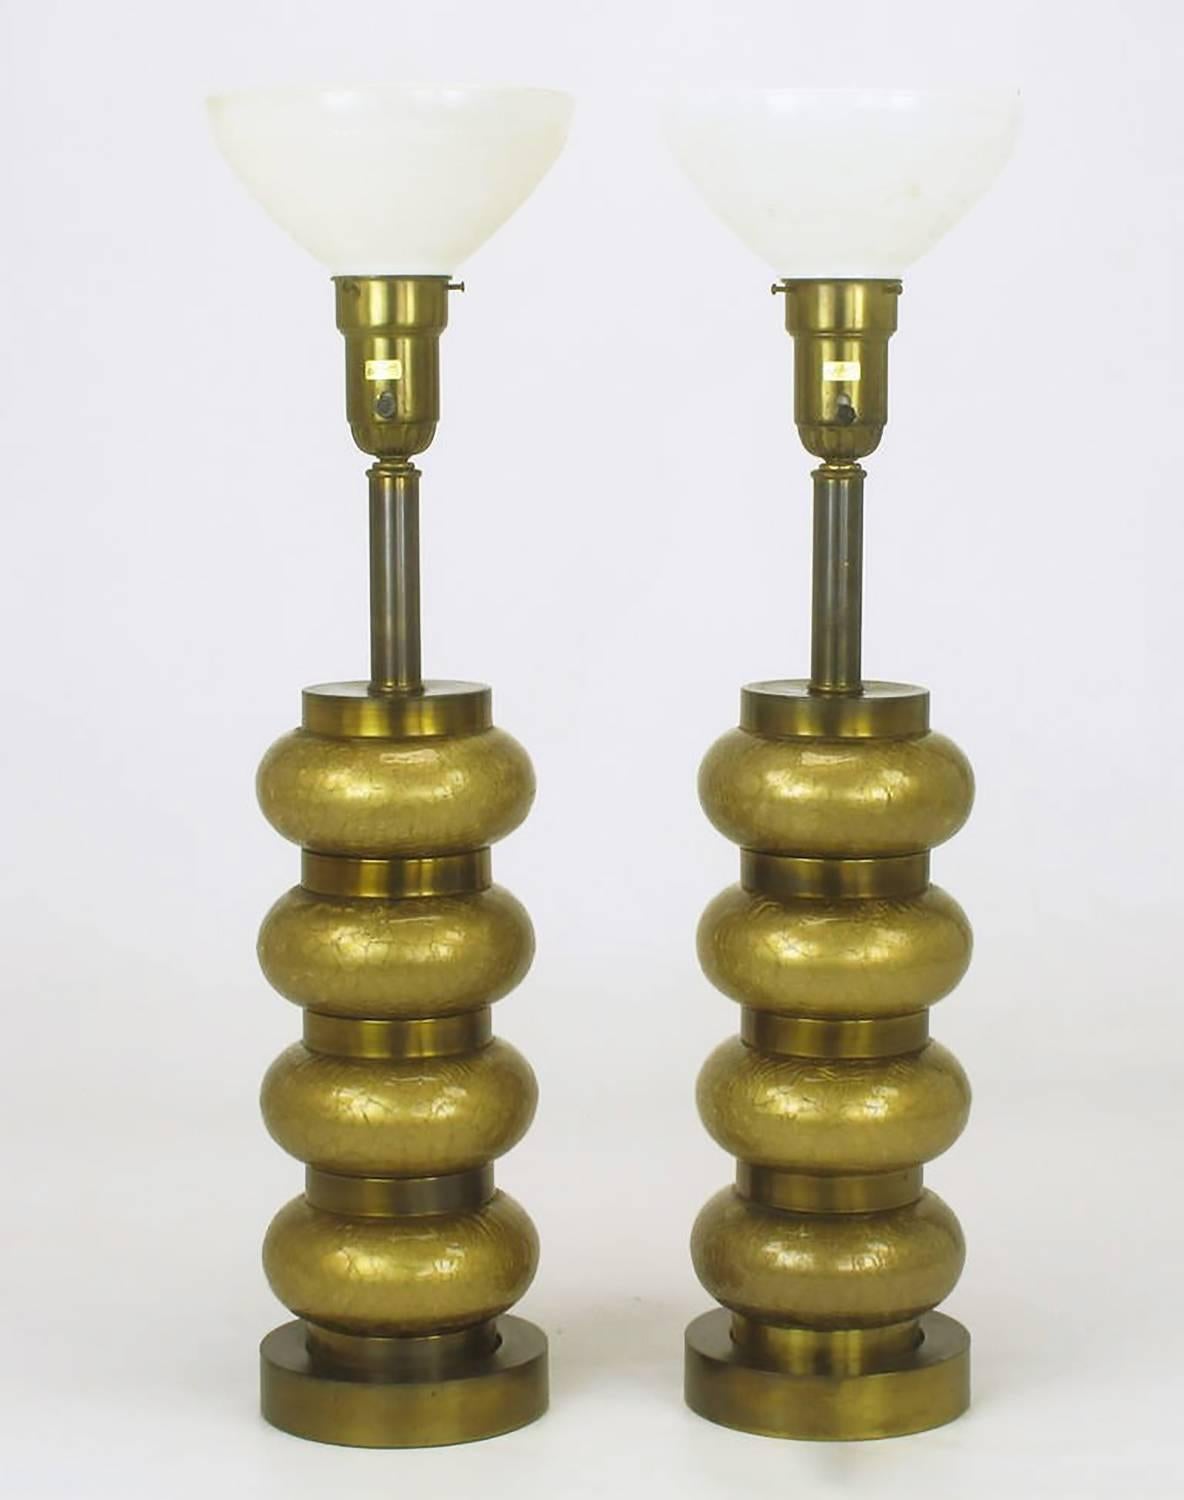 paul hanson lamps history